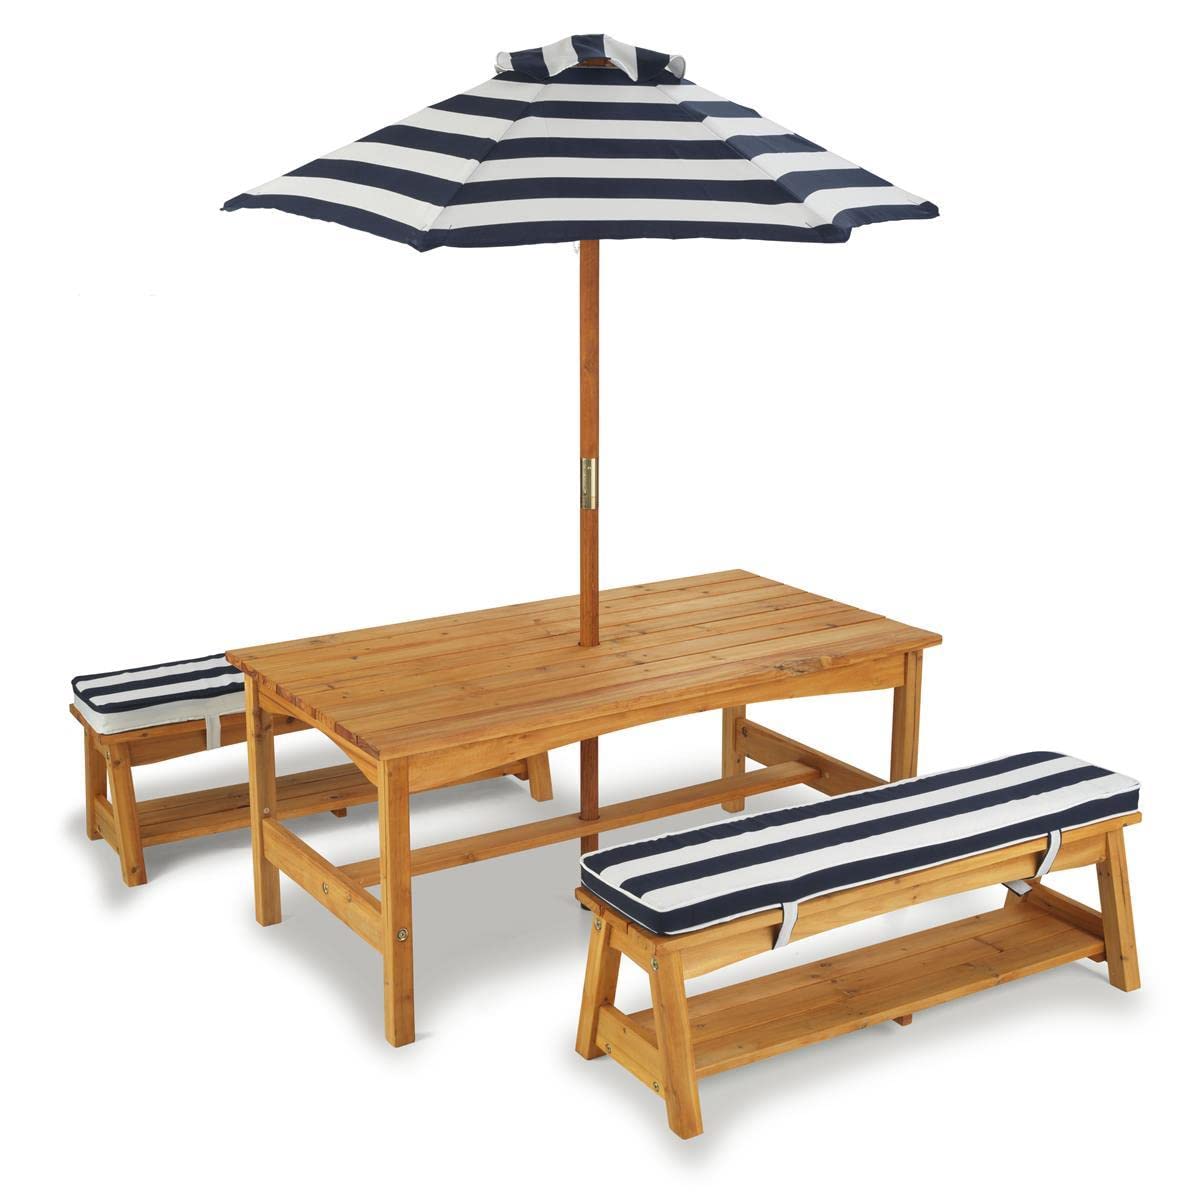 KidKraft Gartentisch mit Bank, Kissen und Sonnenschirm für Kinder, Outdoor Gartenmöbel aus Holz für Kinder, Marineblau-Weiß gestreift, 106